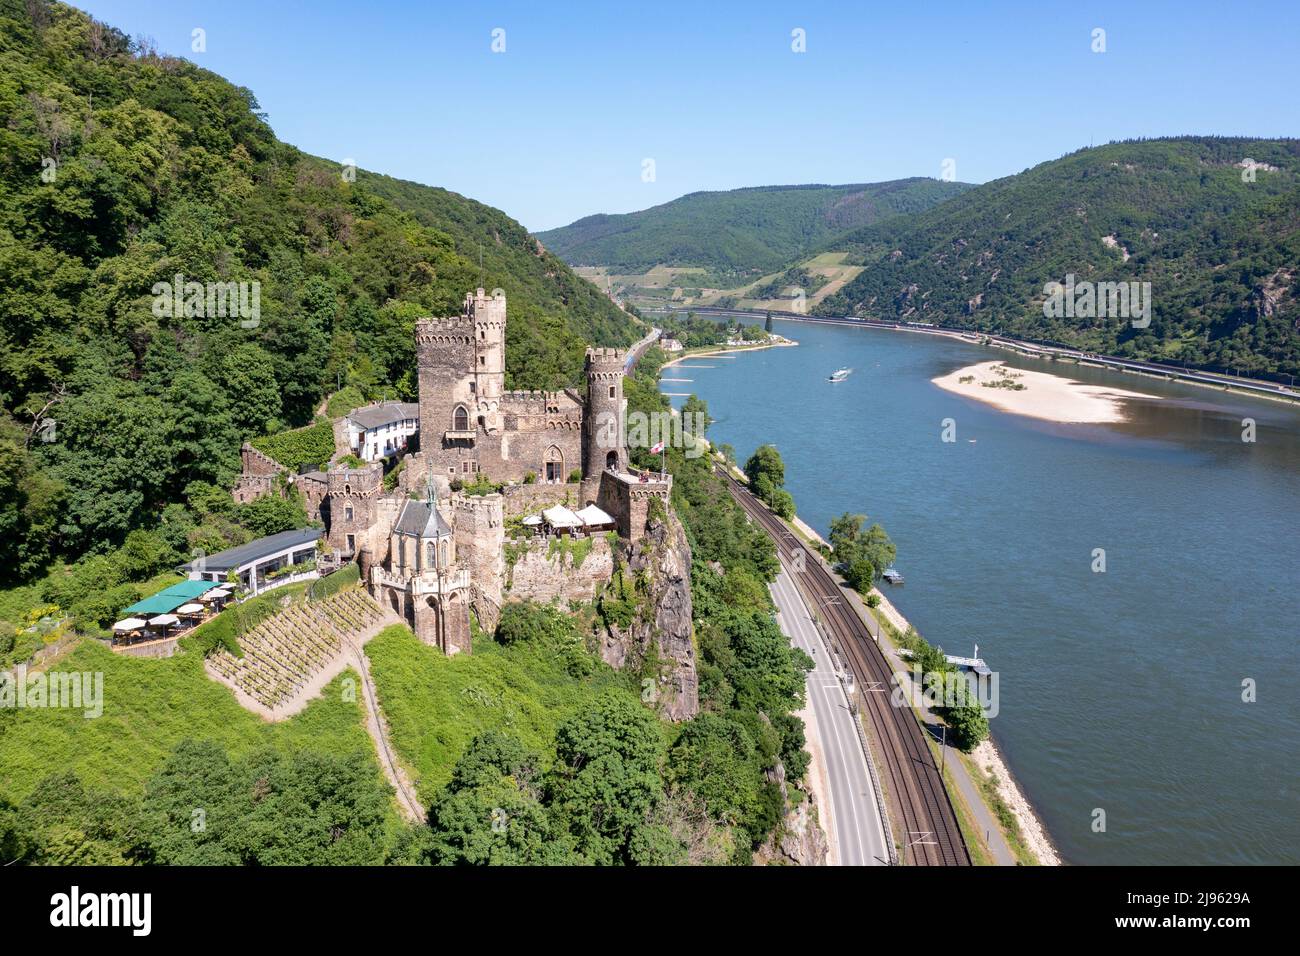 Rheinstein Castle, Romantik-Schloß Burg Rheinstein, Trechtingshausen, Rhine Valley, Germany Stock Photo